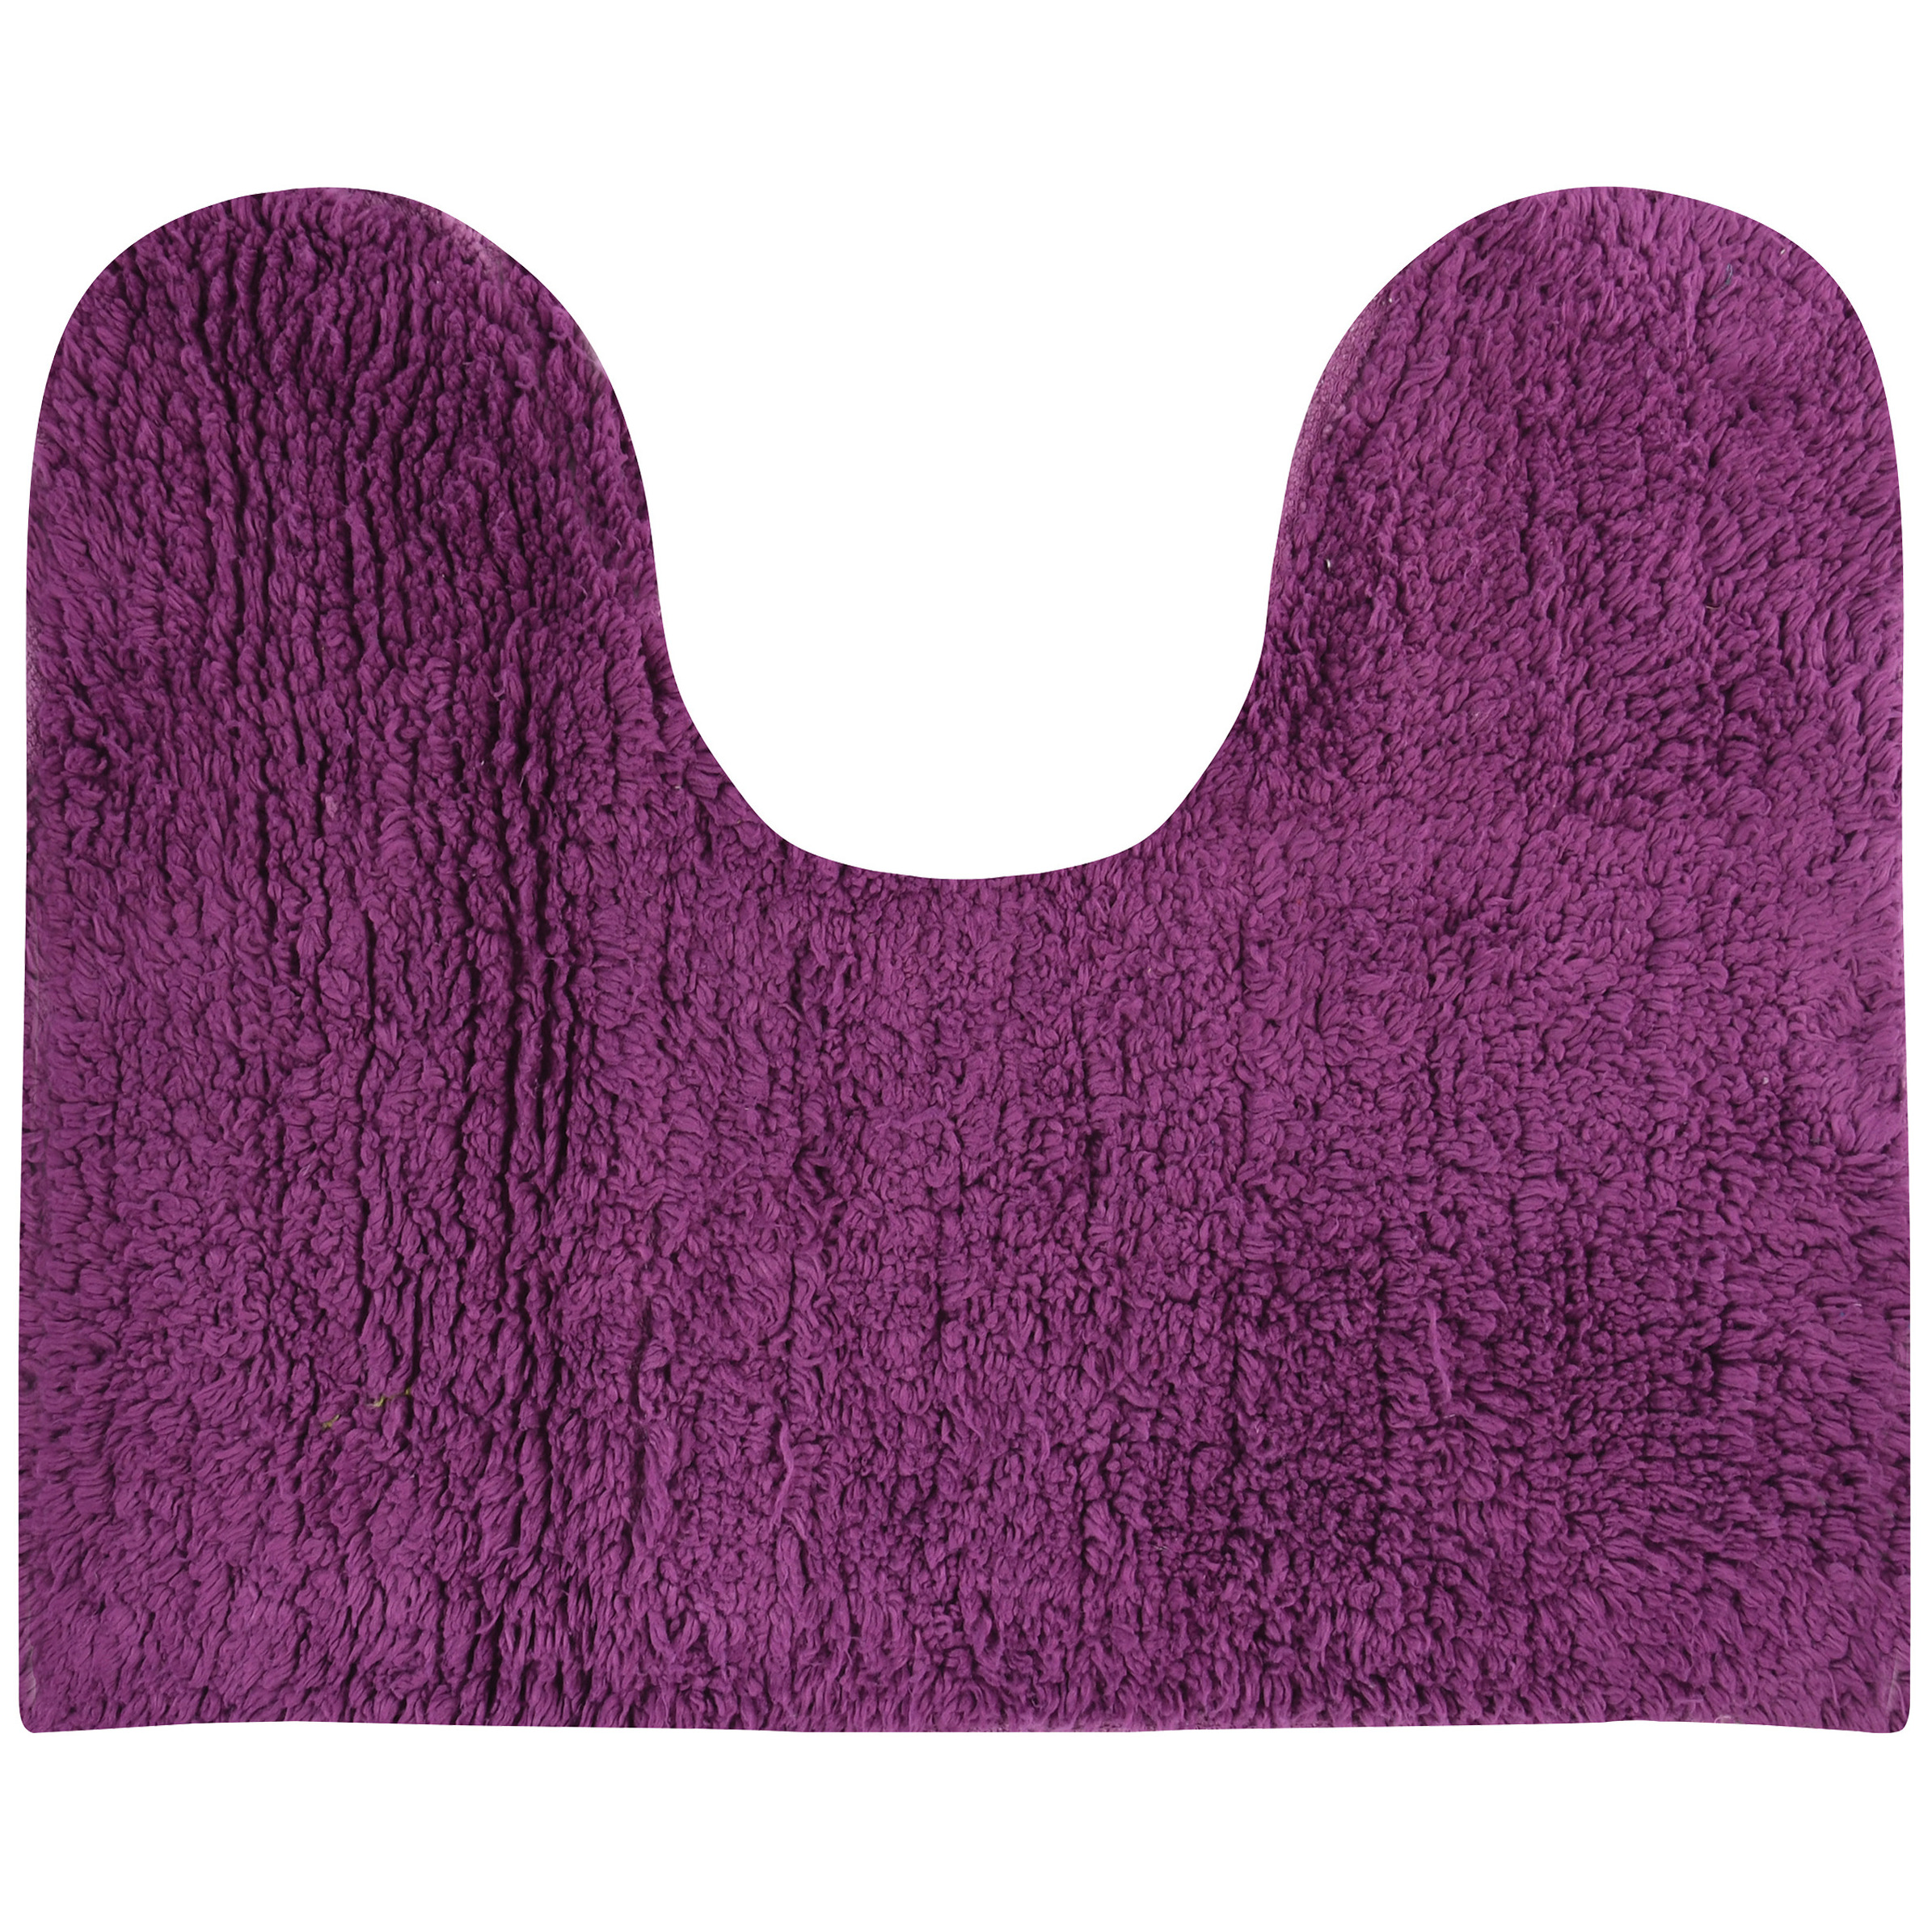 Badkamerkleedje-badmat voor op de vloer paars 45 x 35 cm